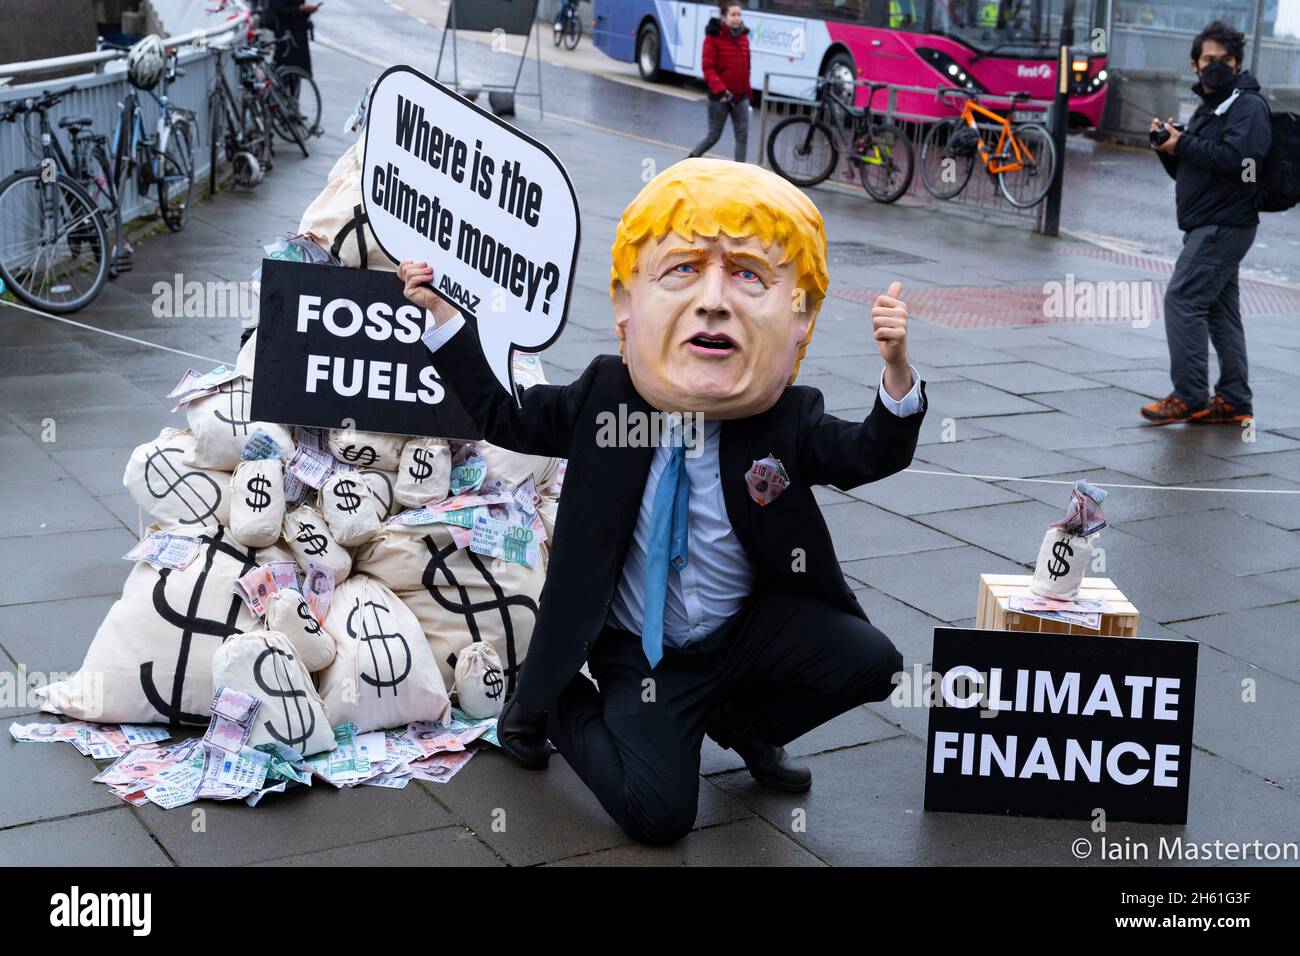 Glasgow, Schottland, Großbritannien. November 2021. Tag dreizehn und letzter Tag des UN-Klimagipfels COP26 in Glasgow. Boris Johnson Bildnis steht neben Säcken mit Geld, das bei einem Protest vor dem Veranstaltungsort der COP26 aus der Gewinnung fossiler Brennstoffe gewonnen wurde. Der Protest wurde von Avaaz organisiert, einer US-Wohltätigkeitsorganisation, die sich für den globalen Aktivismus im Klimawandel einsetzt. Iain Masterton/Alamy Live News. Stockfoto